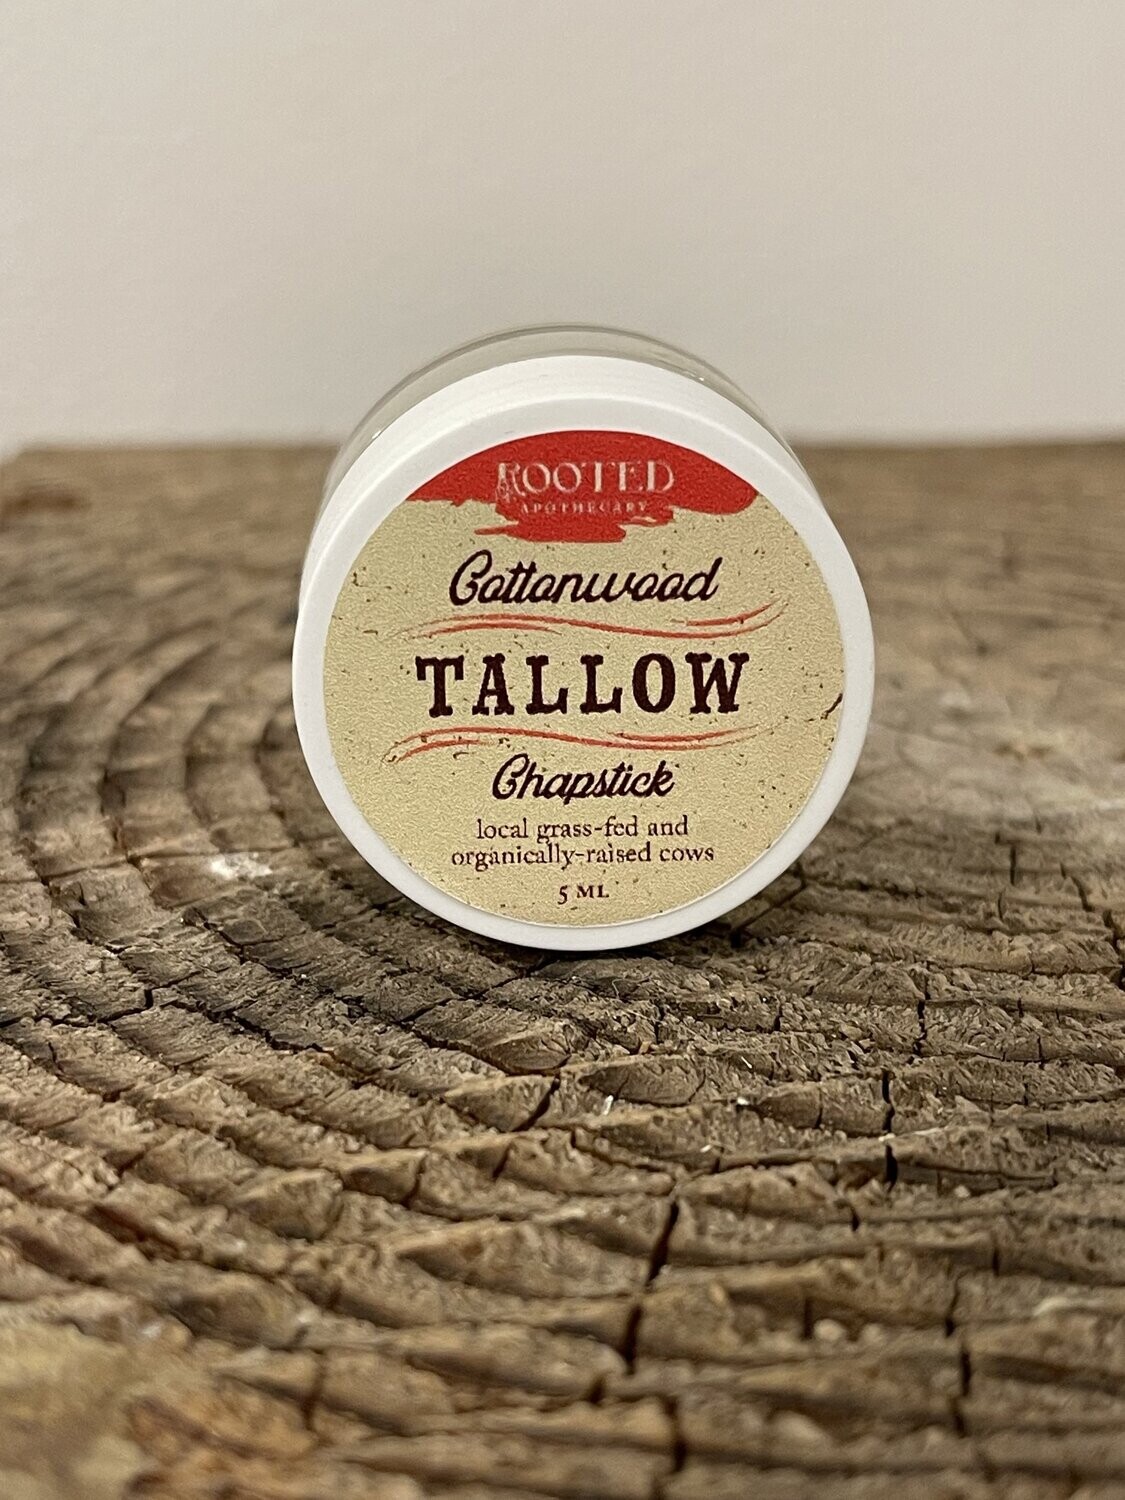 Cottonwood Tallow Chapstick